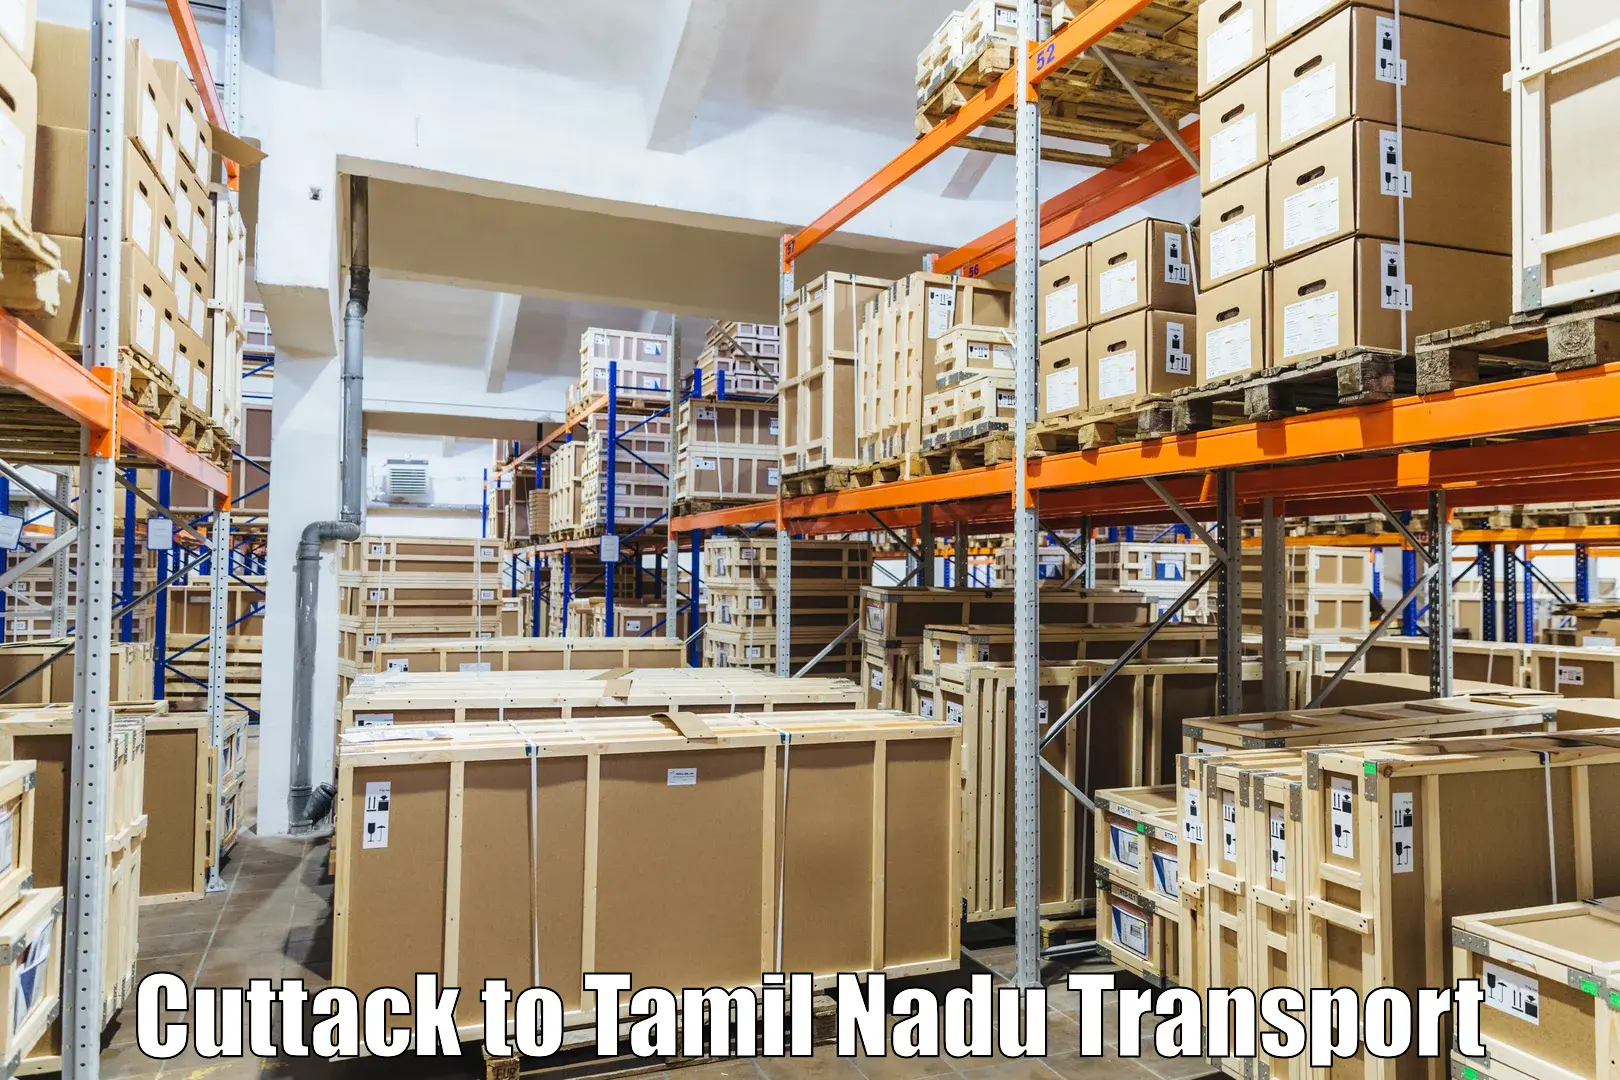 Pick up transport service Cuttack to Tiruturaipundi